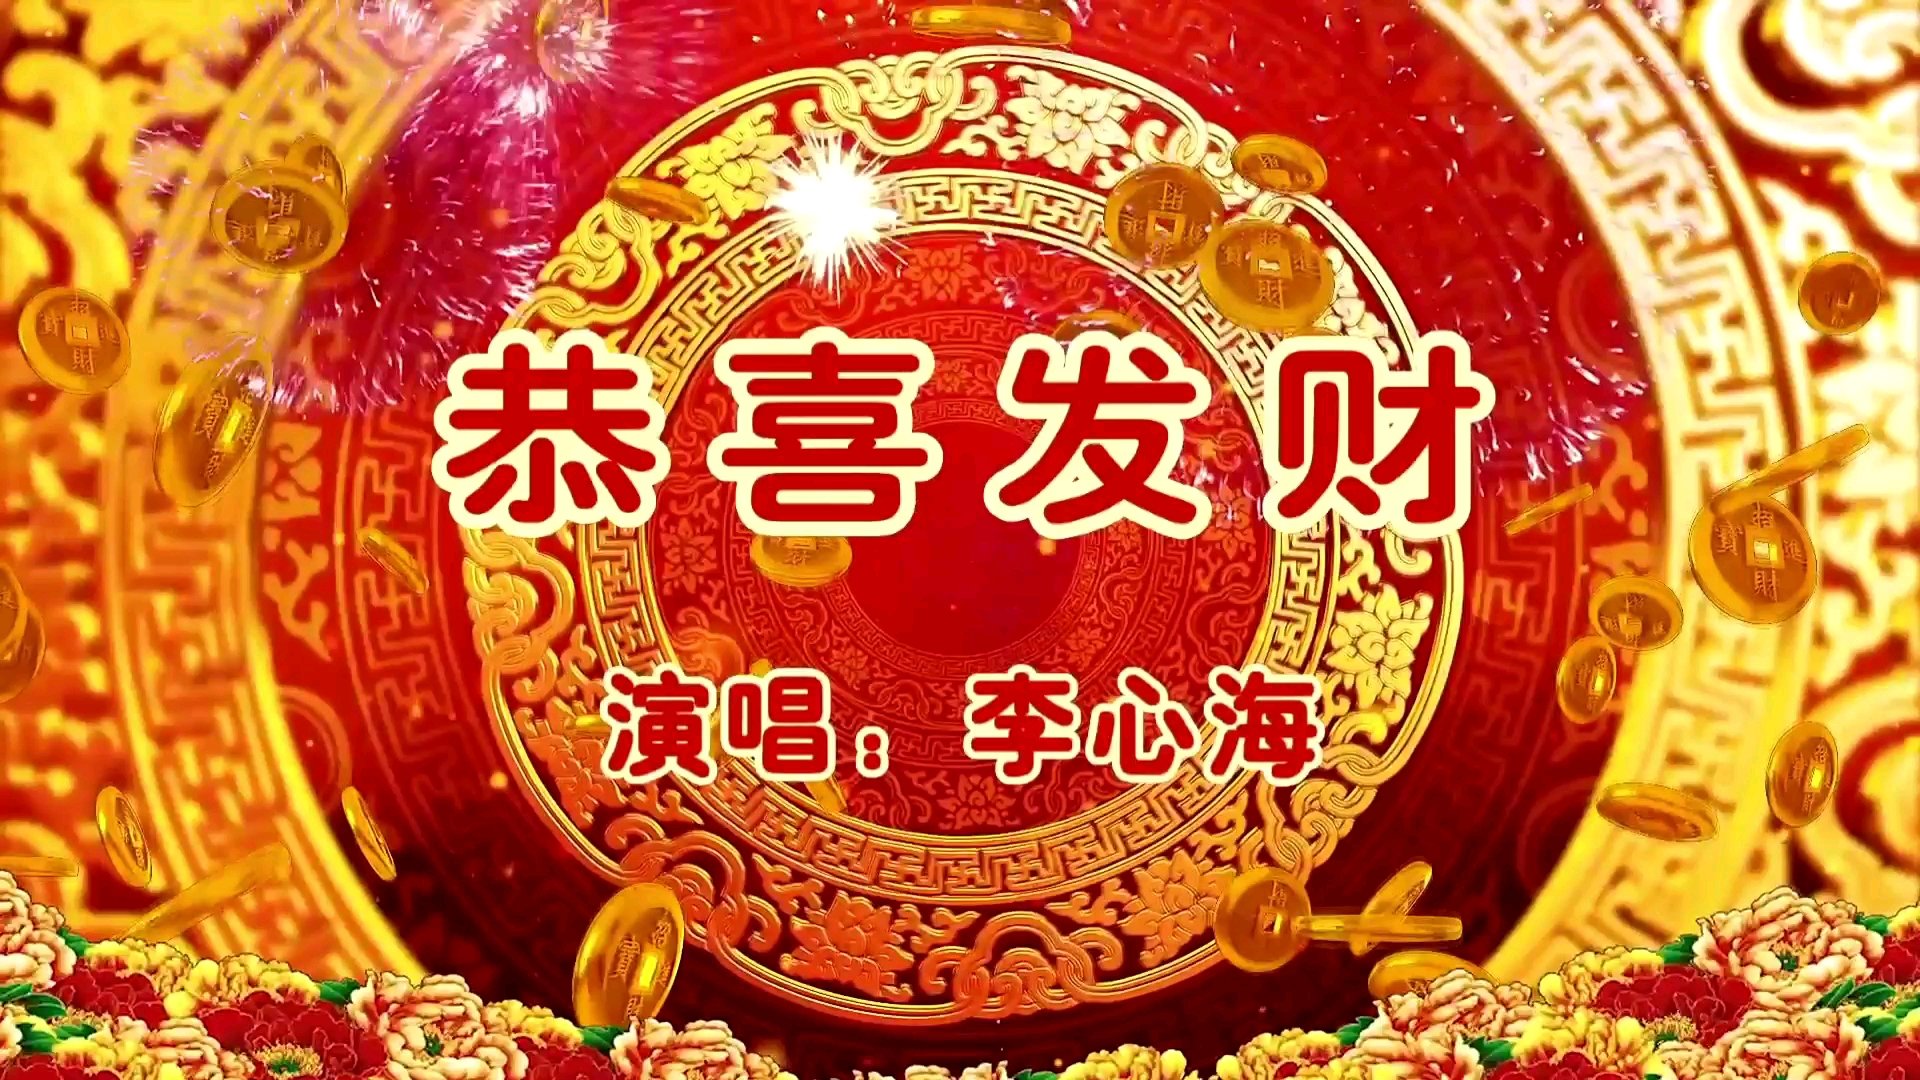 同年,黑龙江网络歌手大奖赛又以歌手李心海命名,举行了2019首届华语